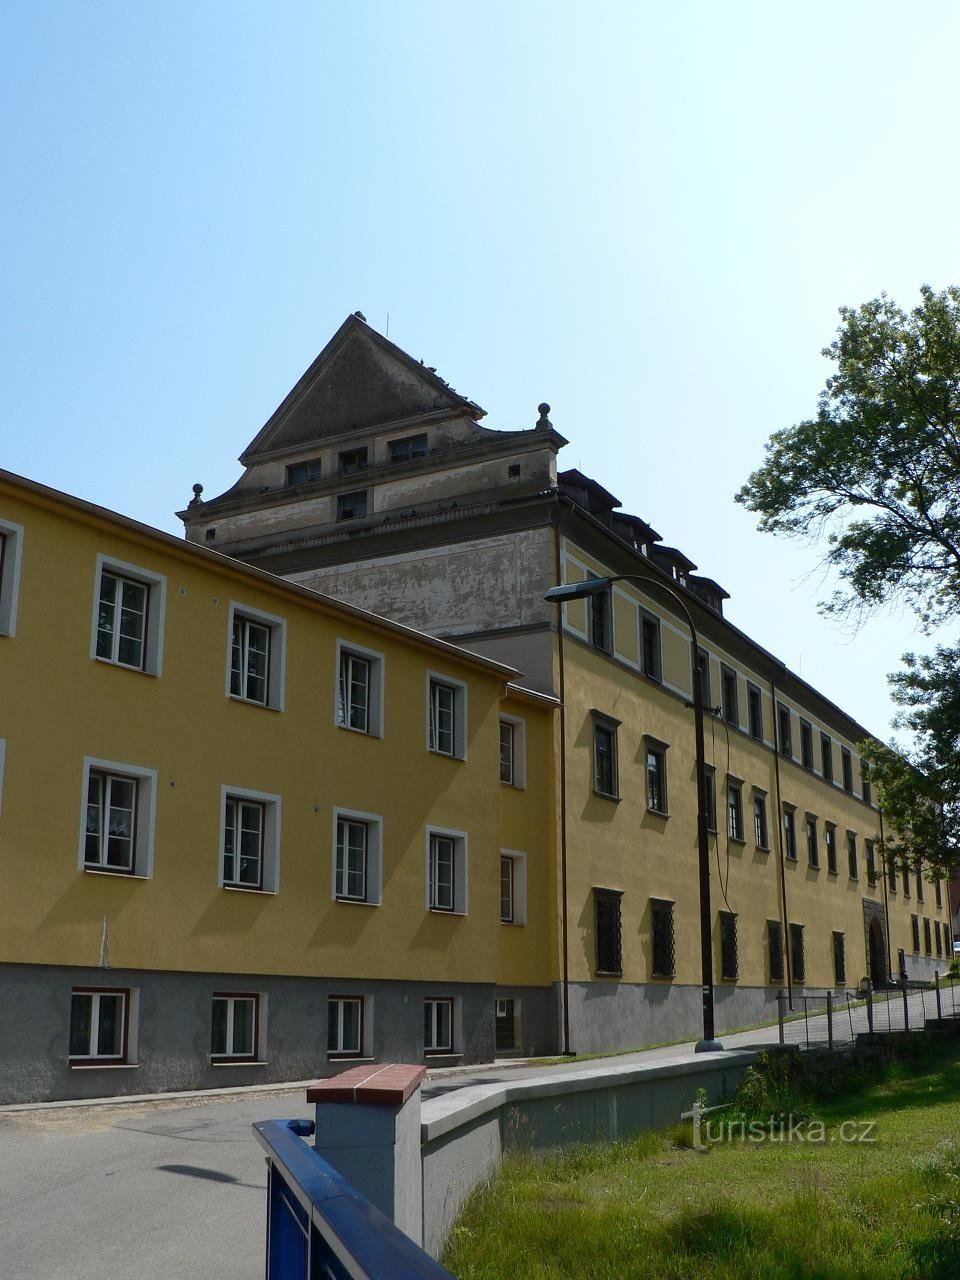 Strelské Hoštice, νότια πτέρυγα του κάστρου